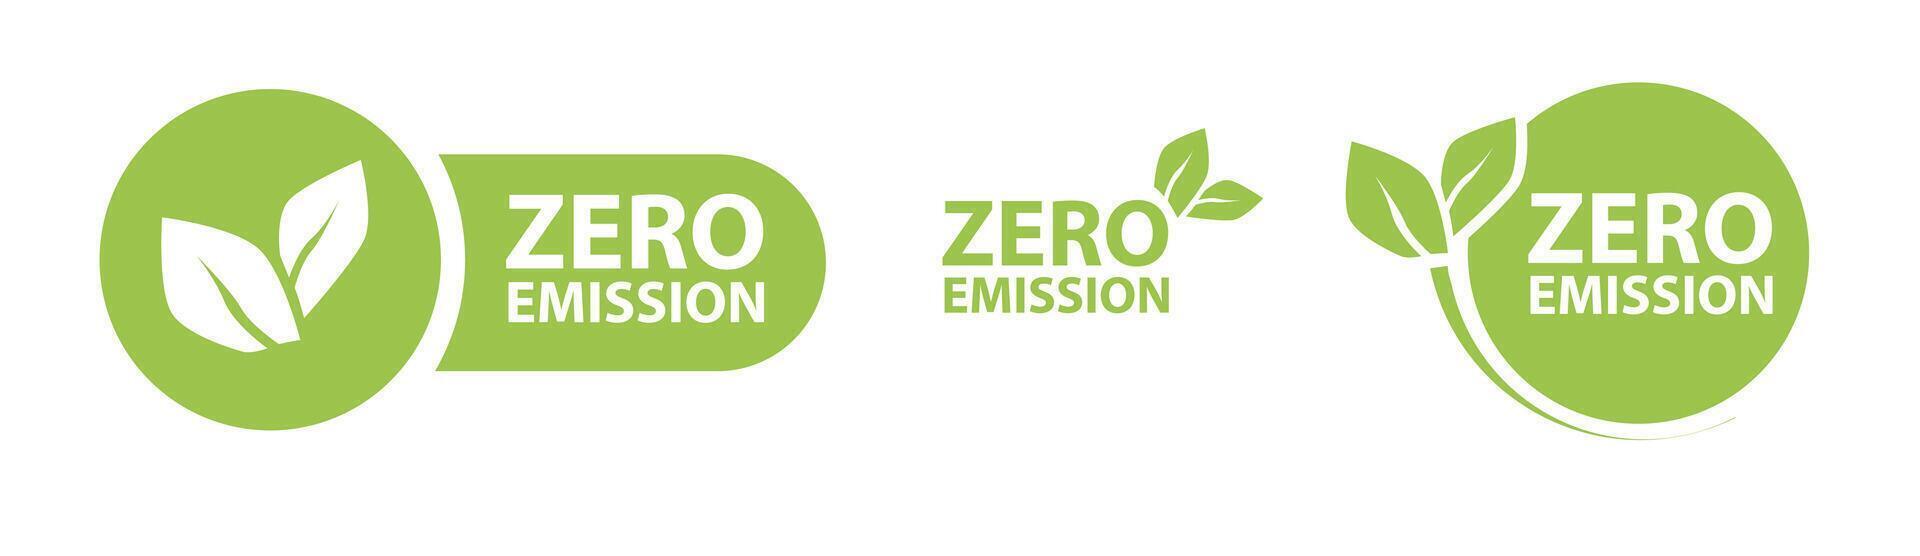 Zero Emission. Net zero label vector